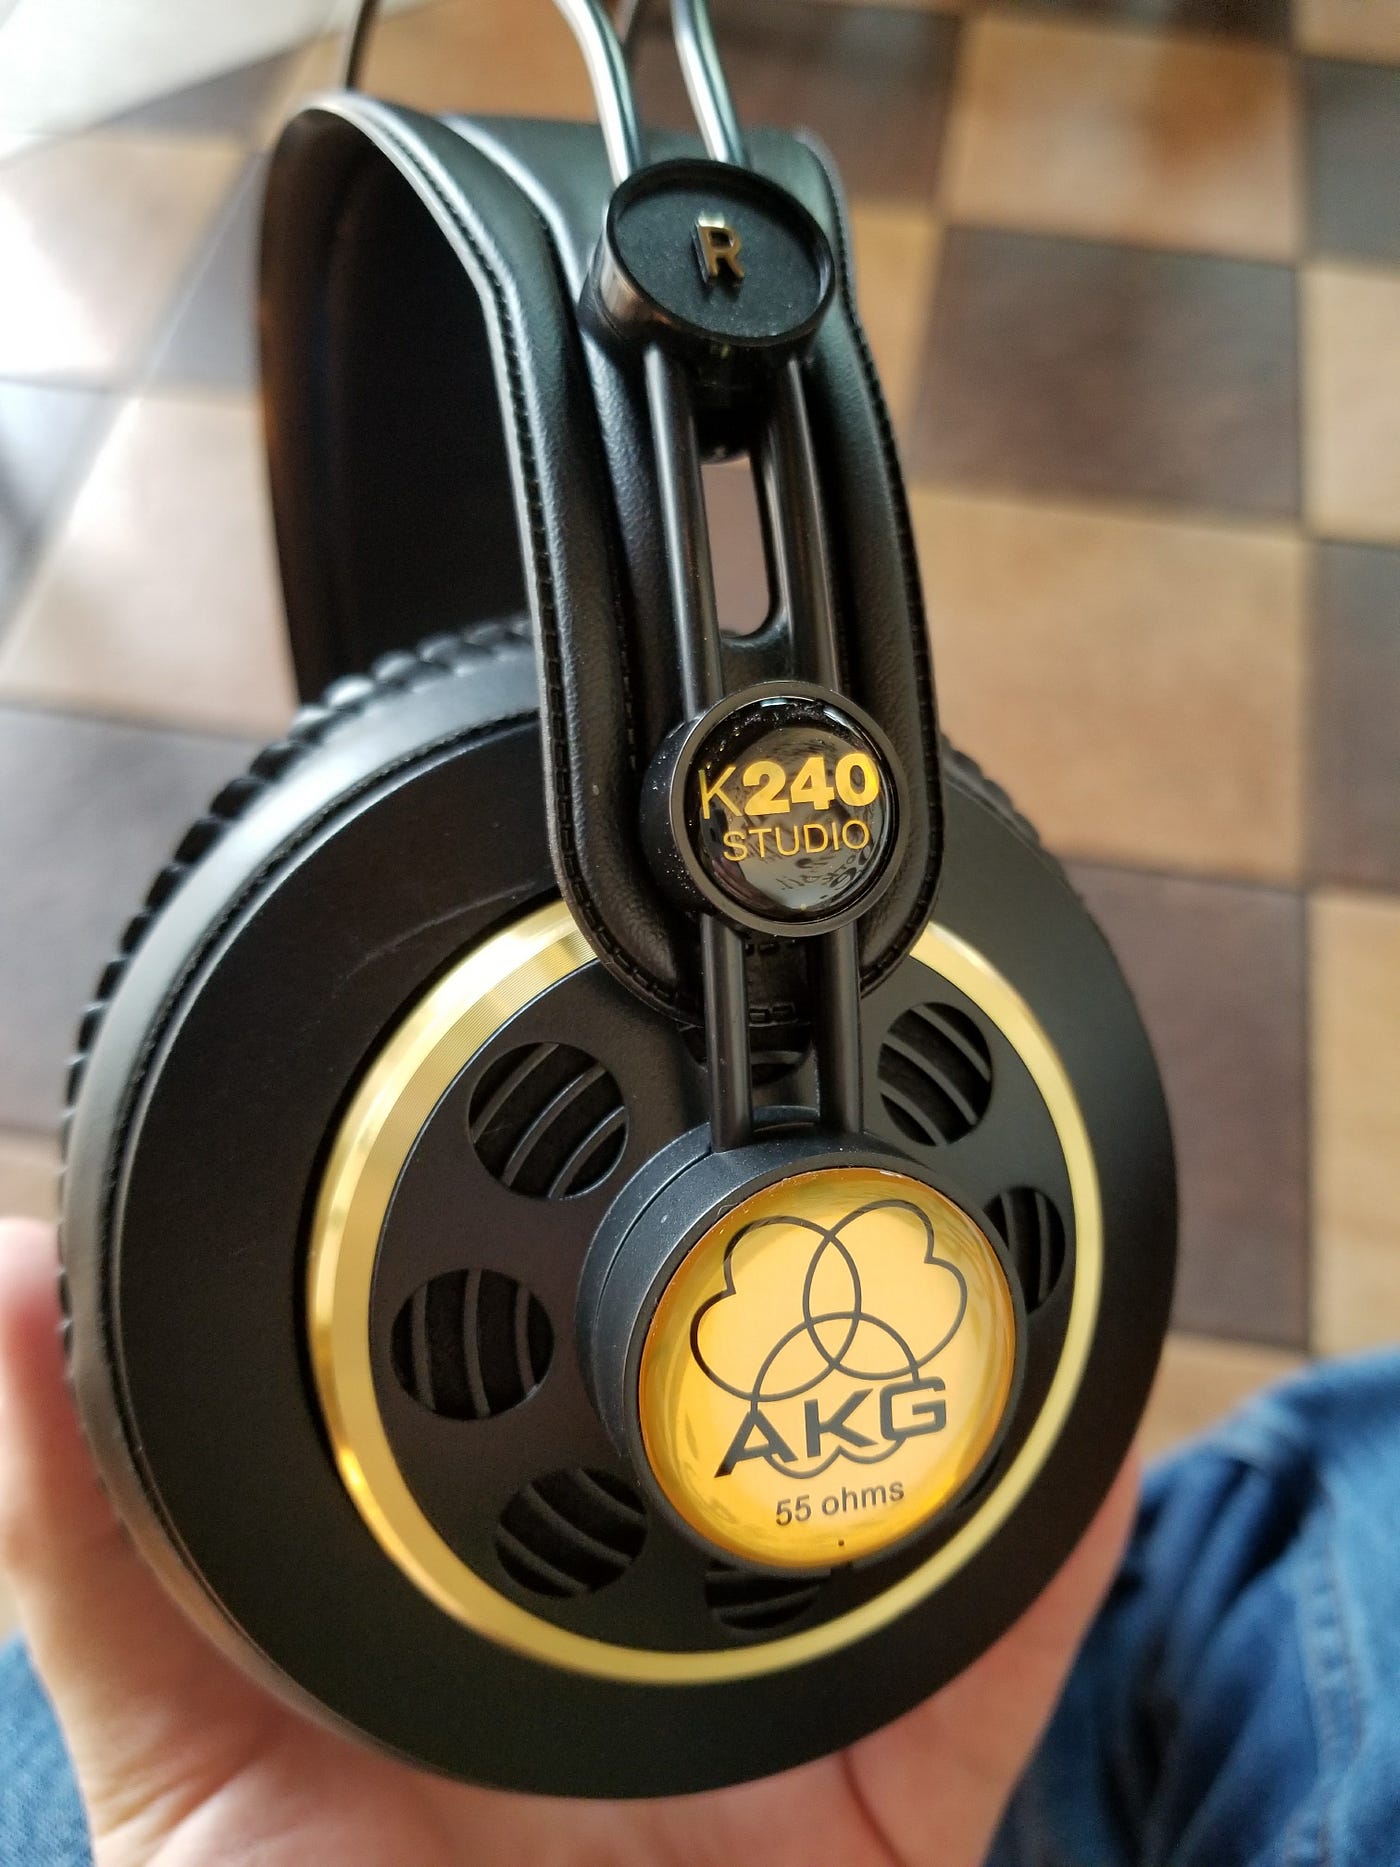 Black and golden AKG K240 Studio headphones